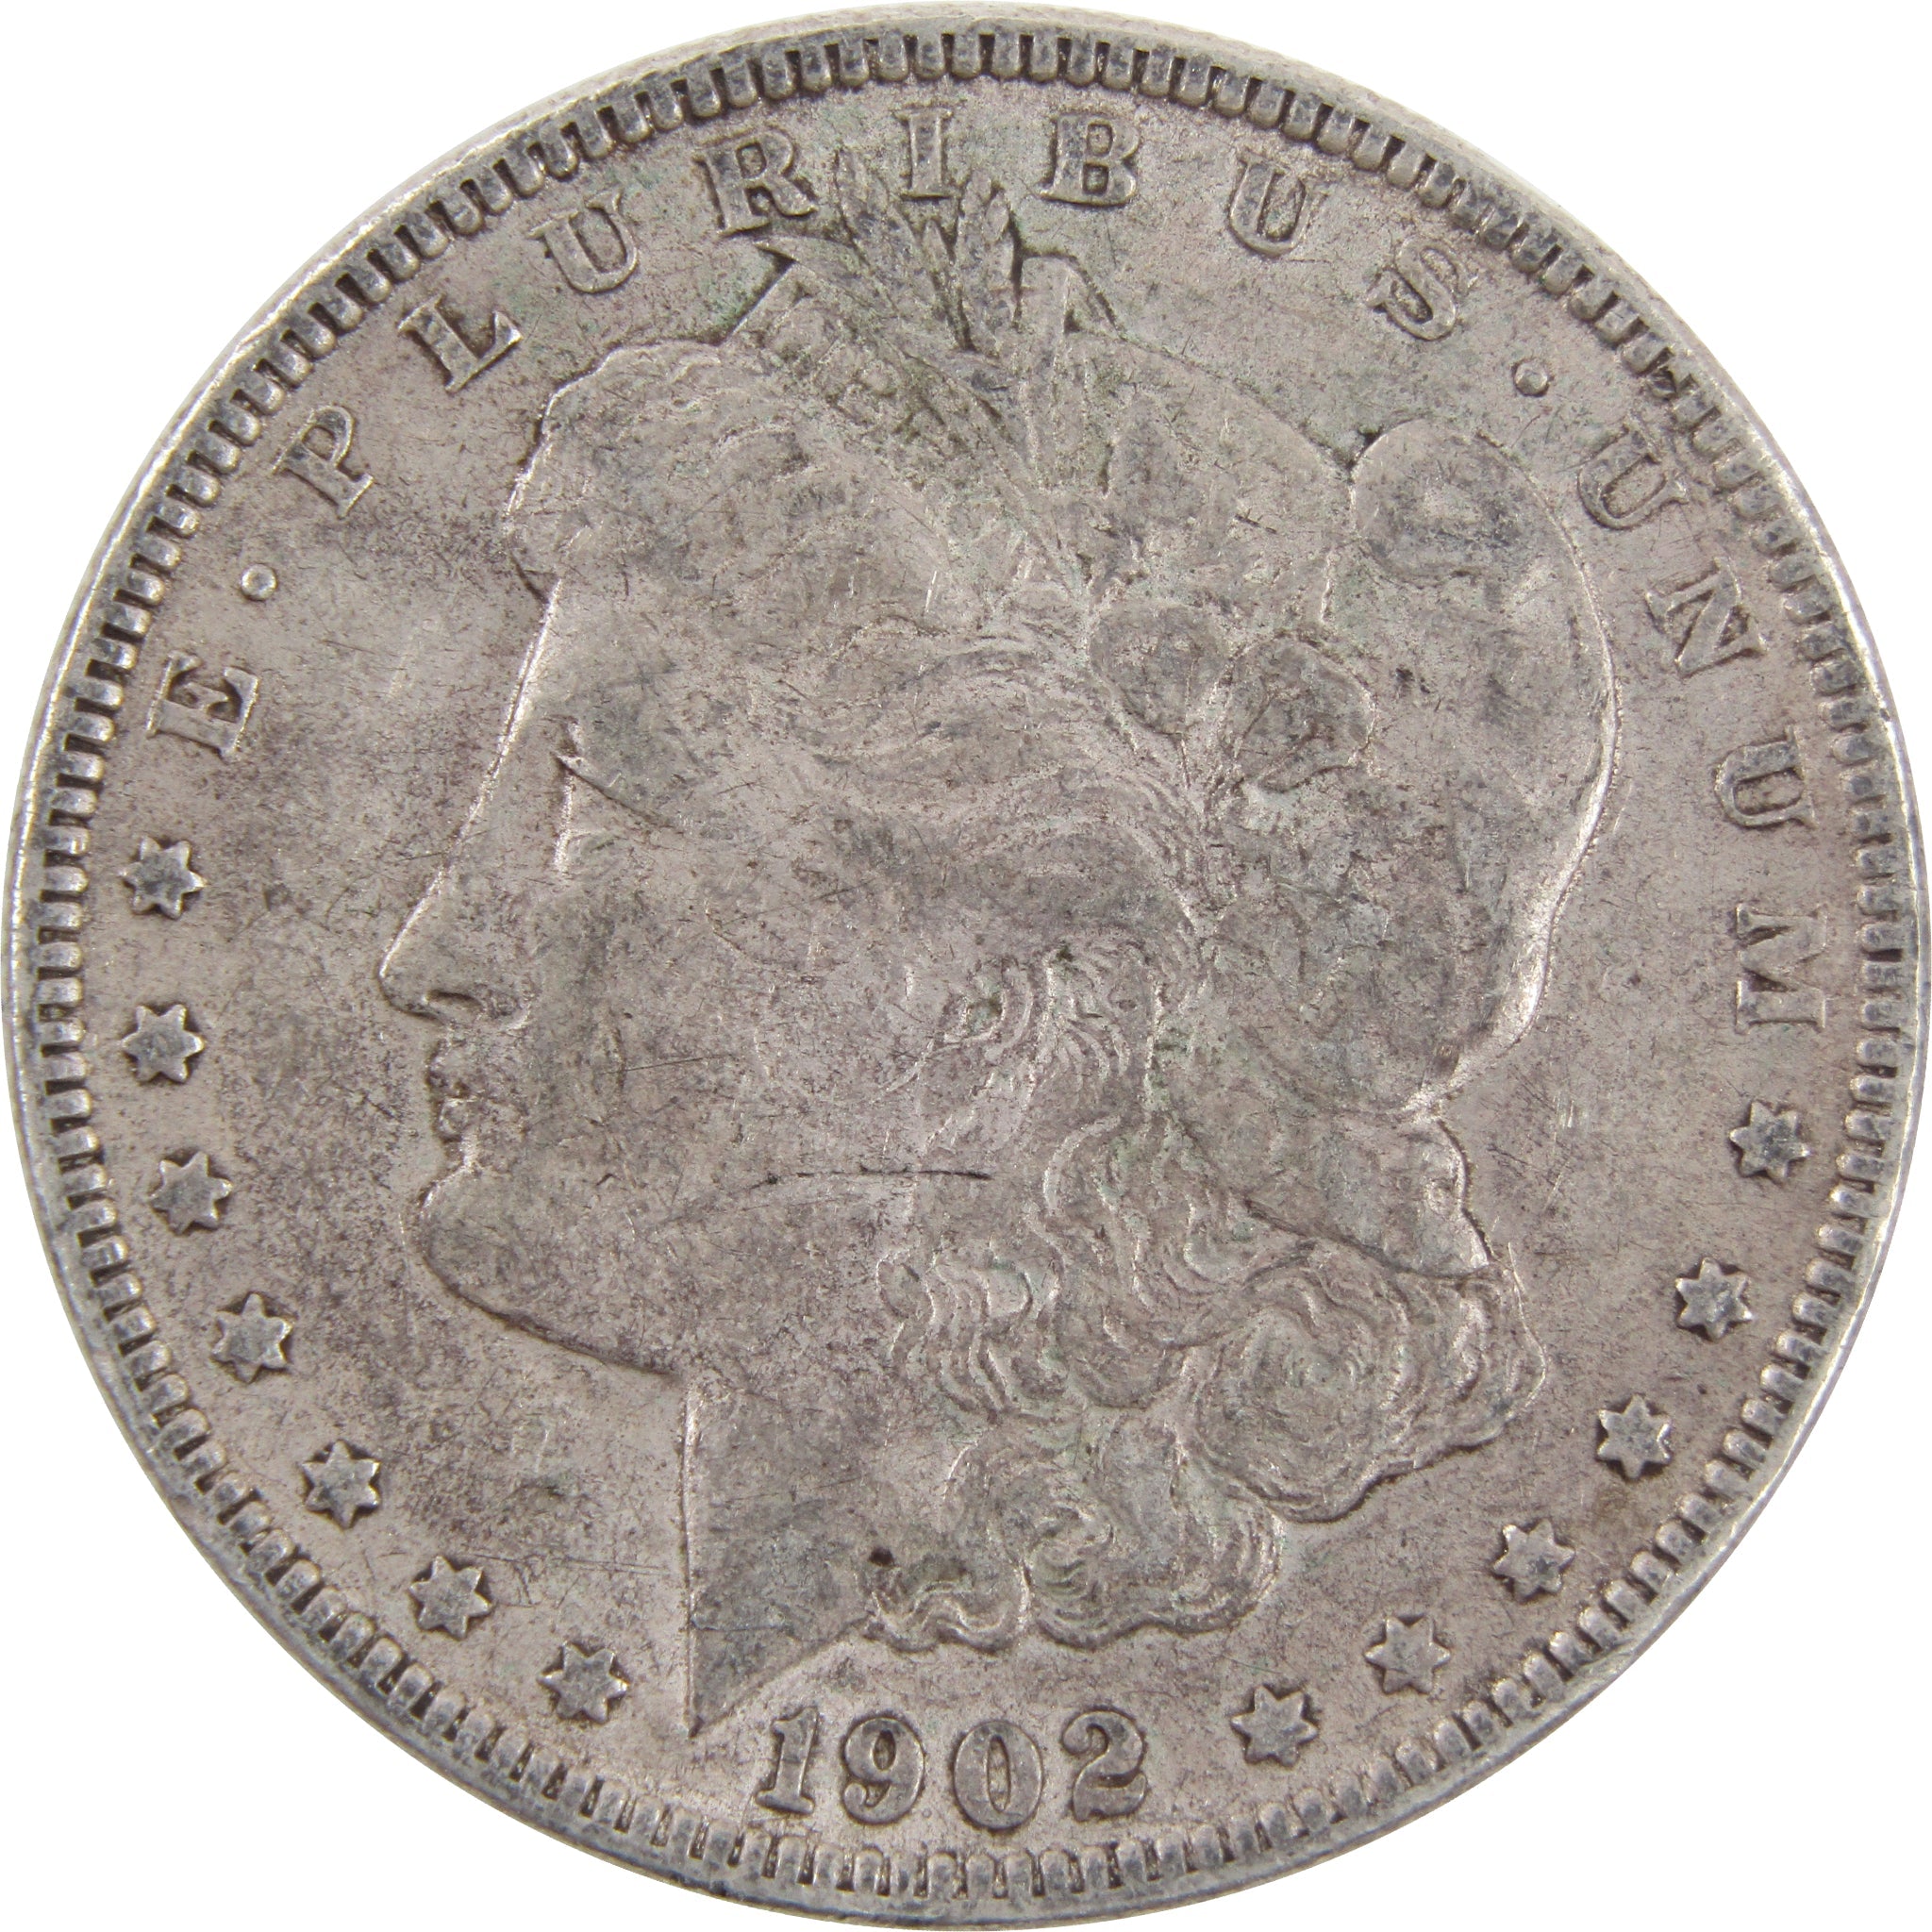 1902 O VAM 3 Micro O Morgan Dollar XF 90% Silver $1 Coin SKU:I2615 - Morgan coin - Morgan silver dollar - Morgan silver dollar for sale - Profile Coins &amp; Collectibles